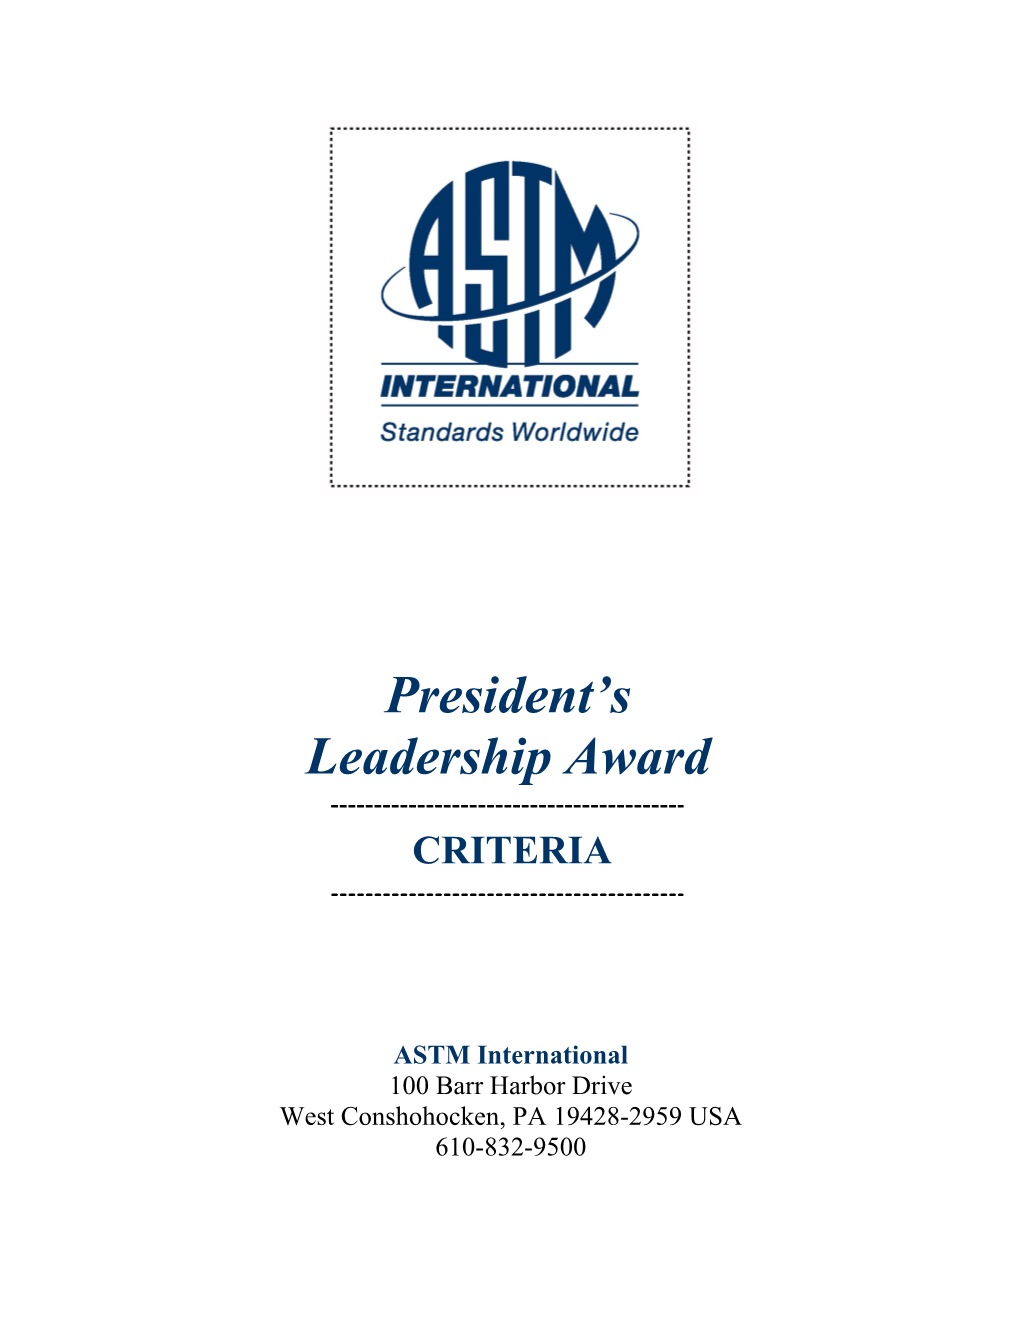 Rules Governing the Astm International President S Award